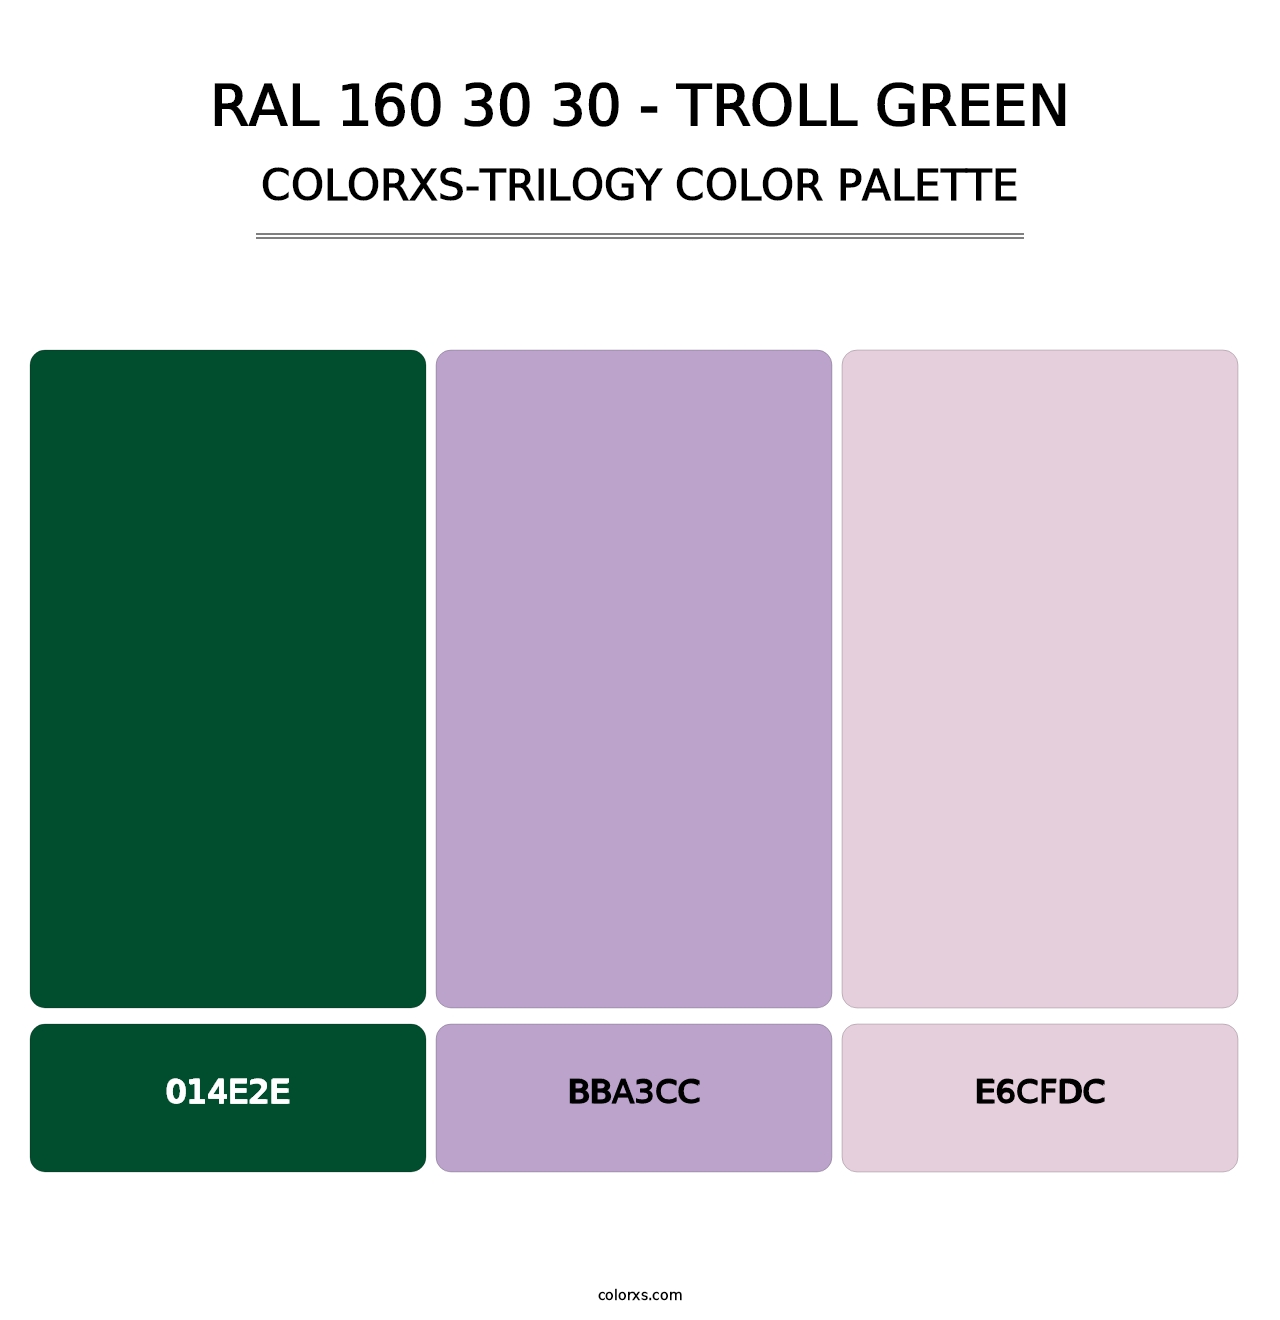 RAL 160 30 30 - Troll Green - Colorxs Trilogy Palette